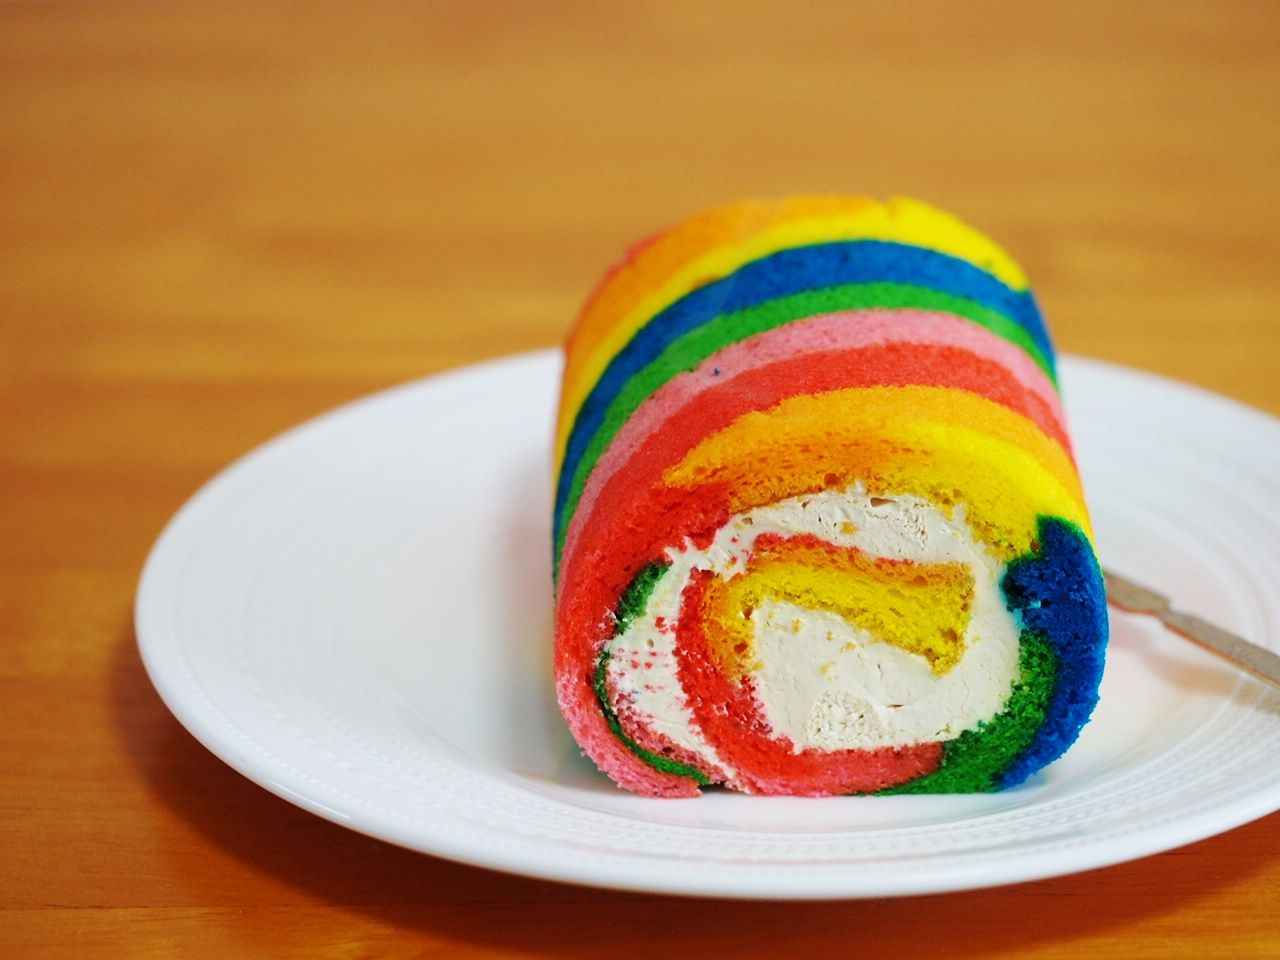 奈良県の道の駅かつらぎでカラフルすぎるレインボーロールケーキを発見 スイーツハンター月ウサギの食べ日記 Powered By ライブドアブログ